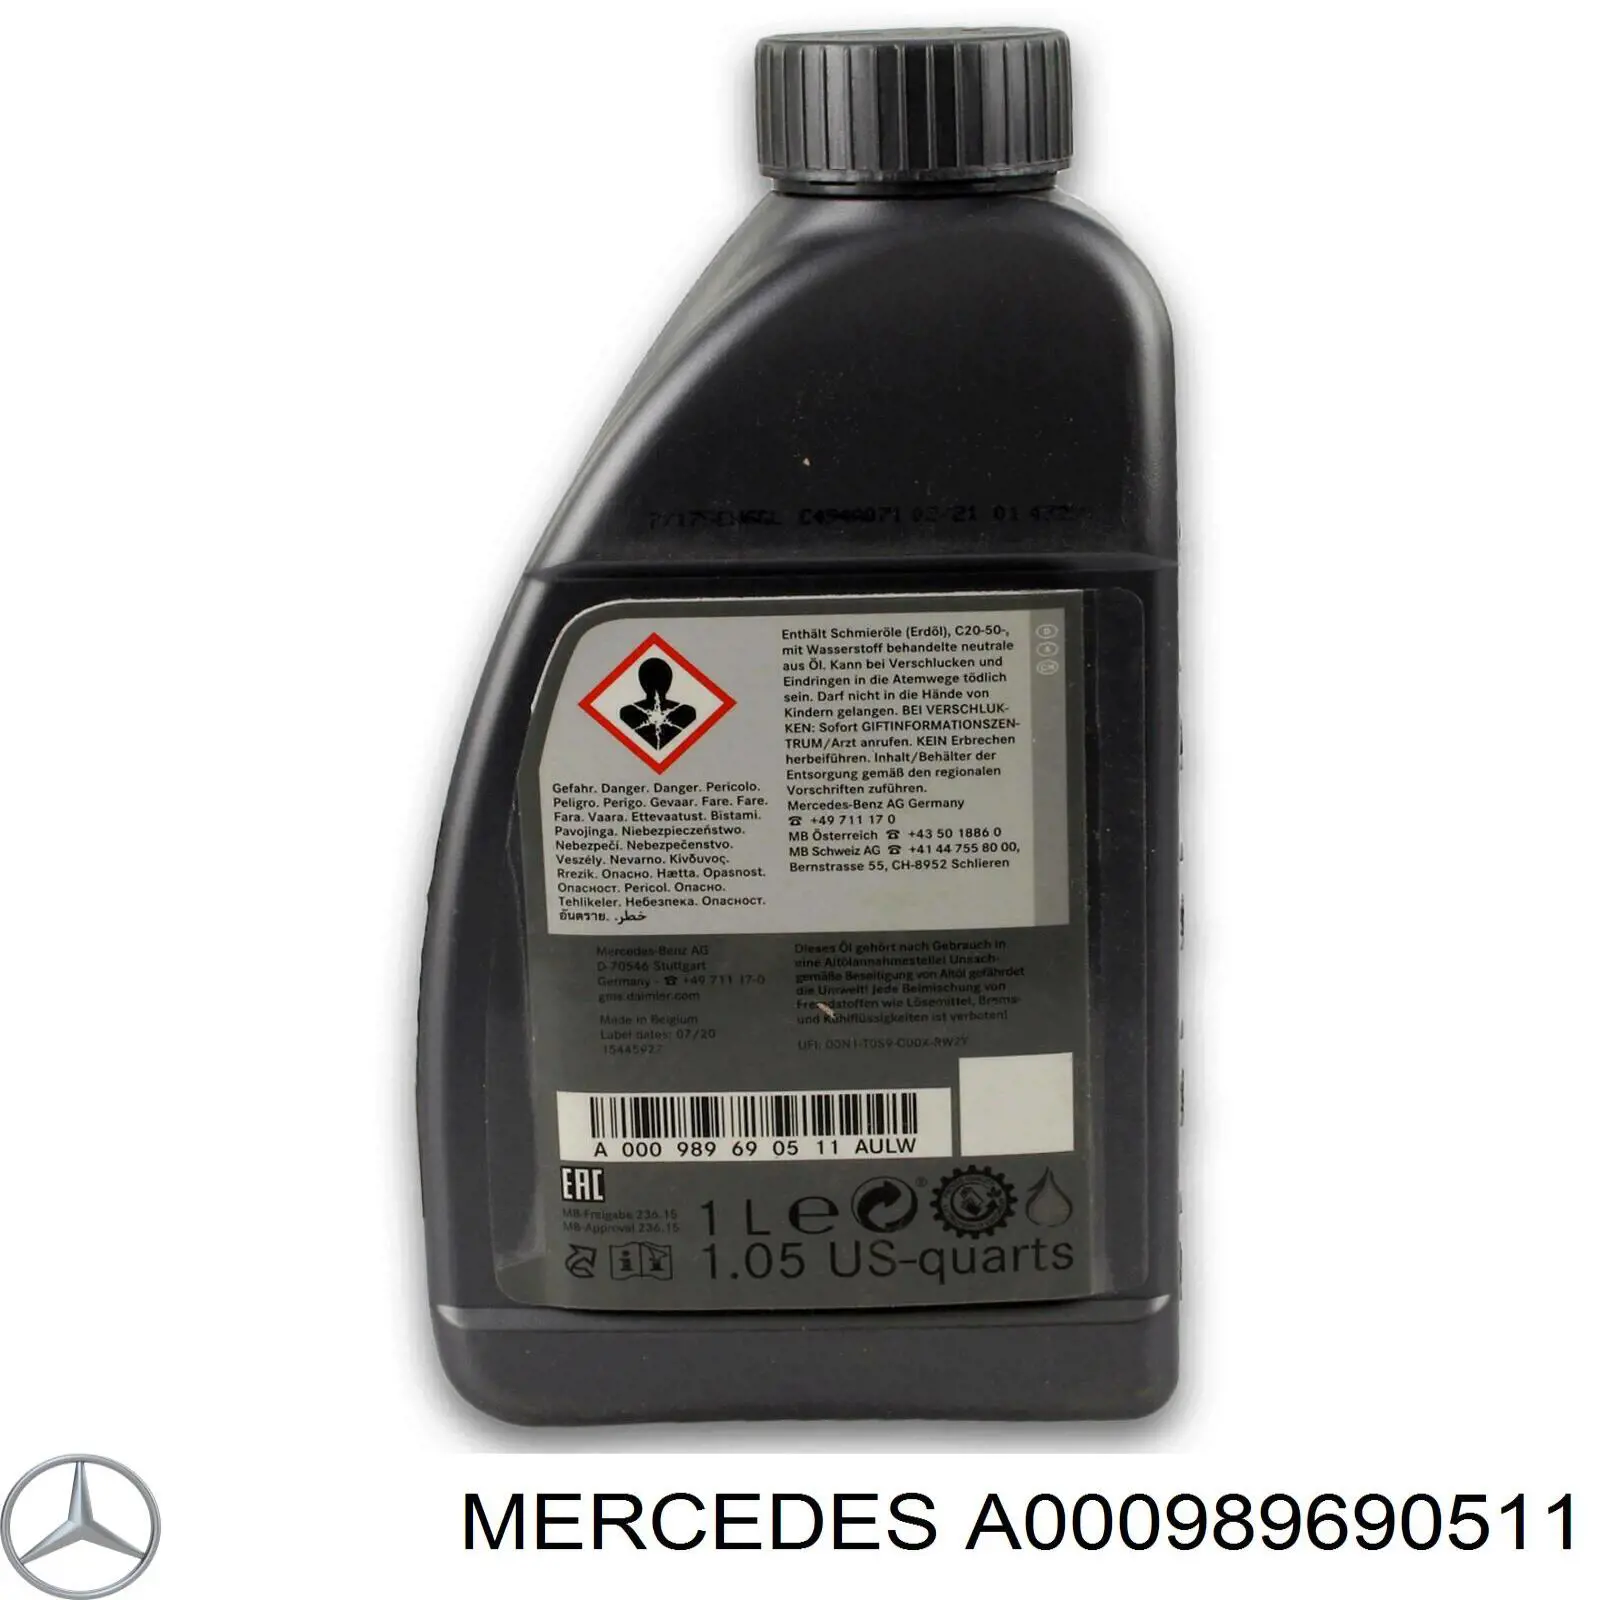  Трансмиссионное масло Mercedes (A000989690511)